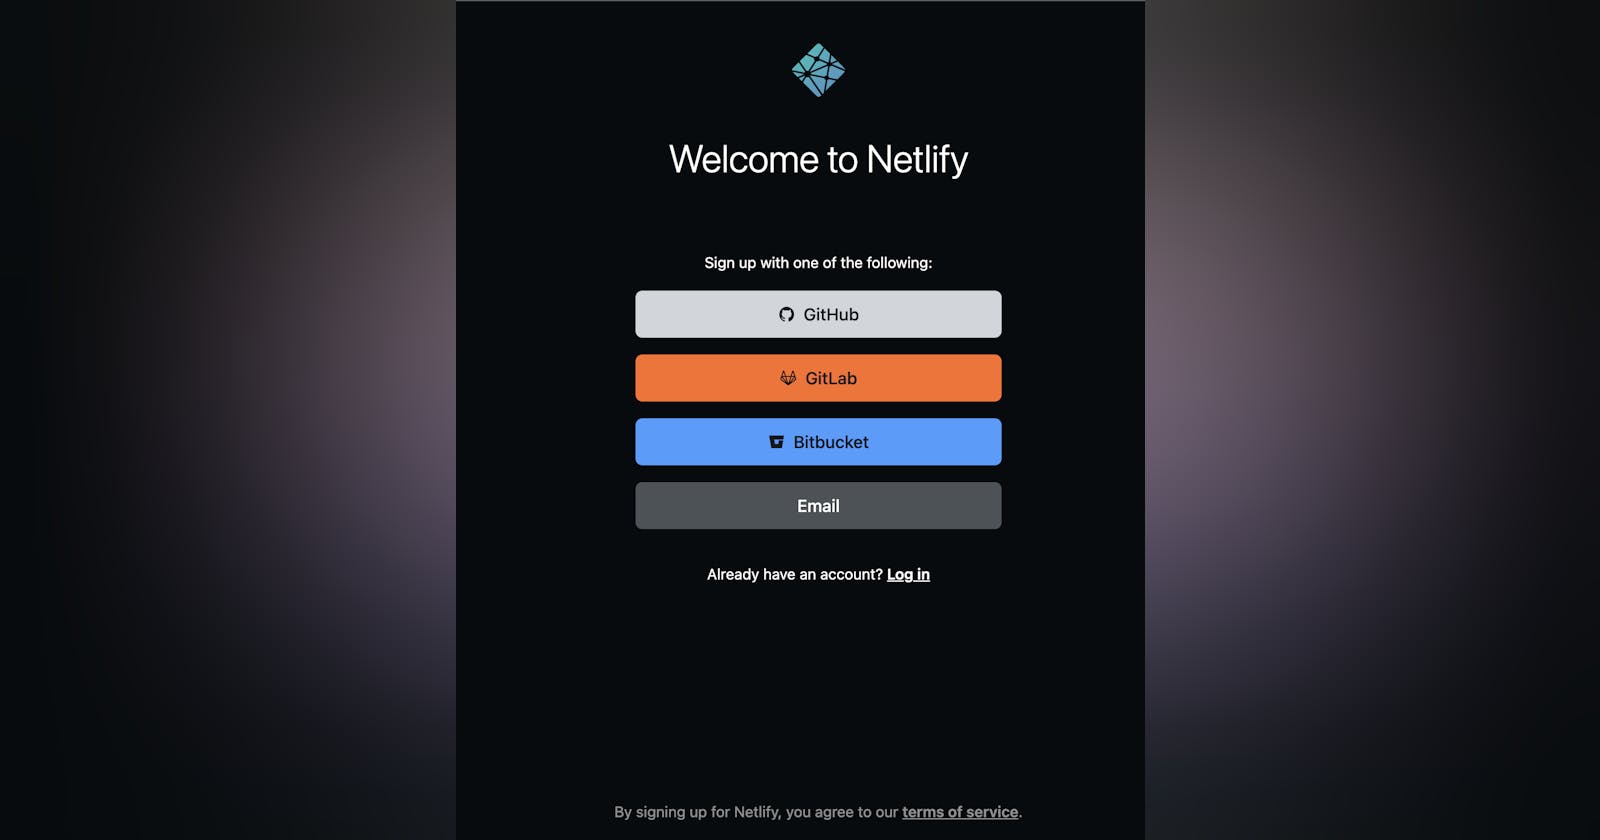 Redeploying on Netlify